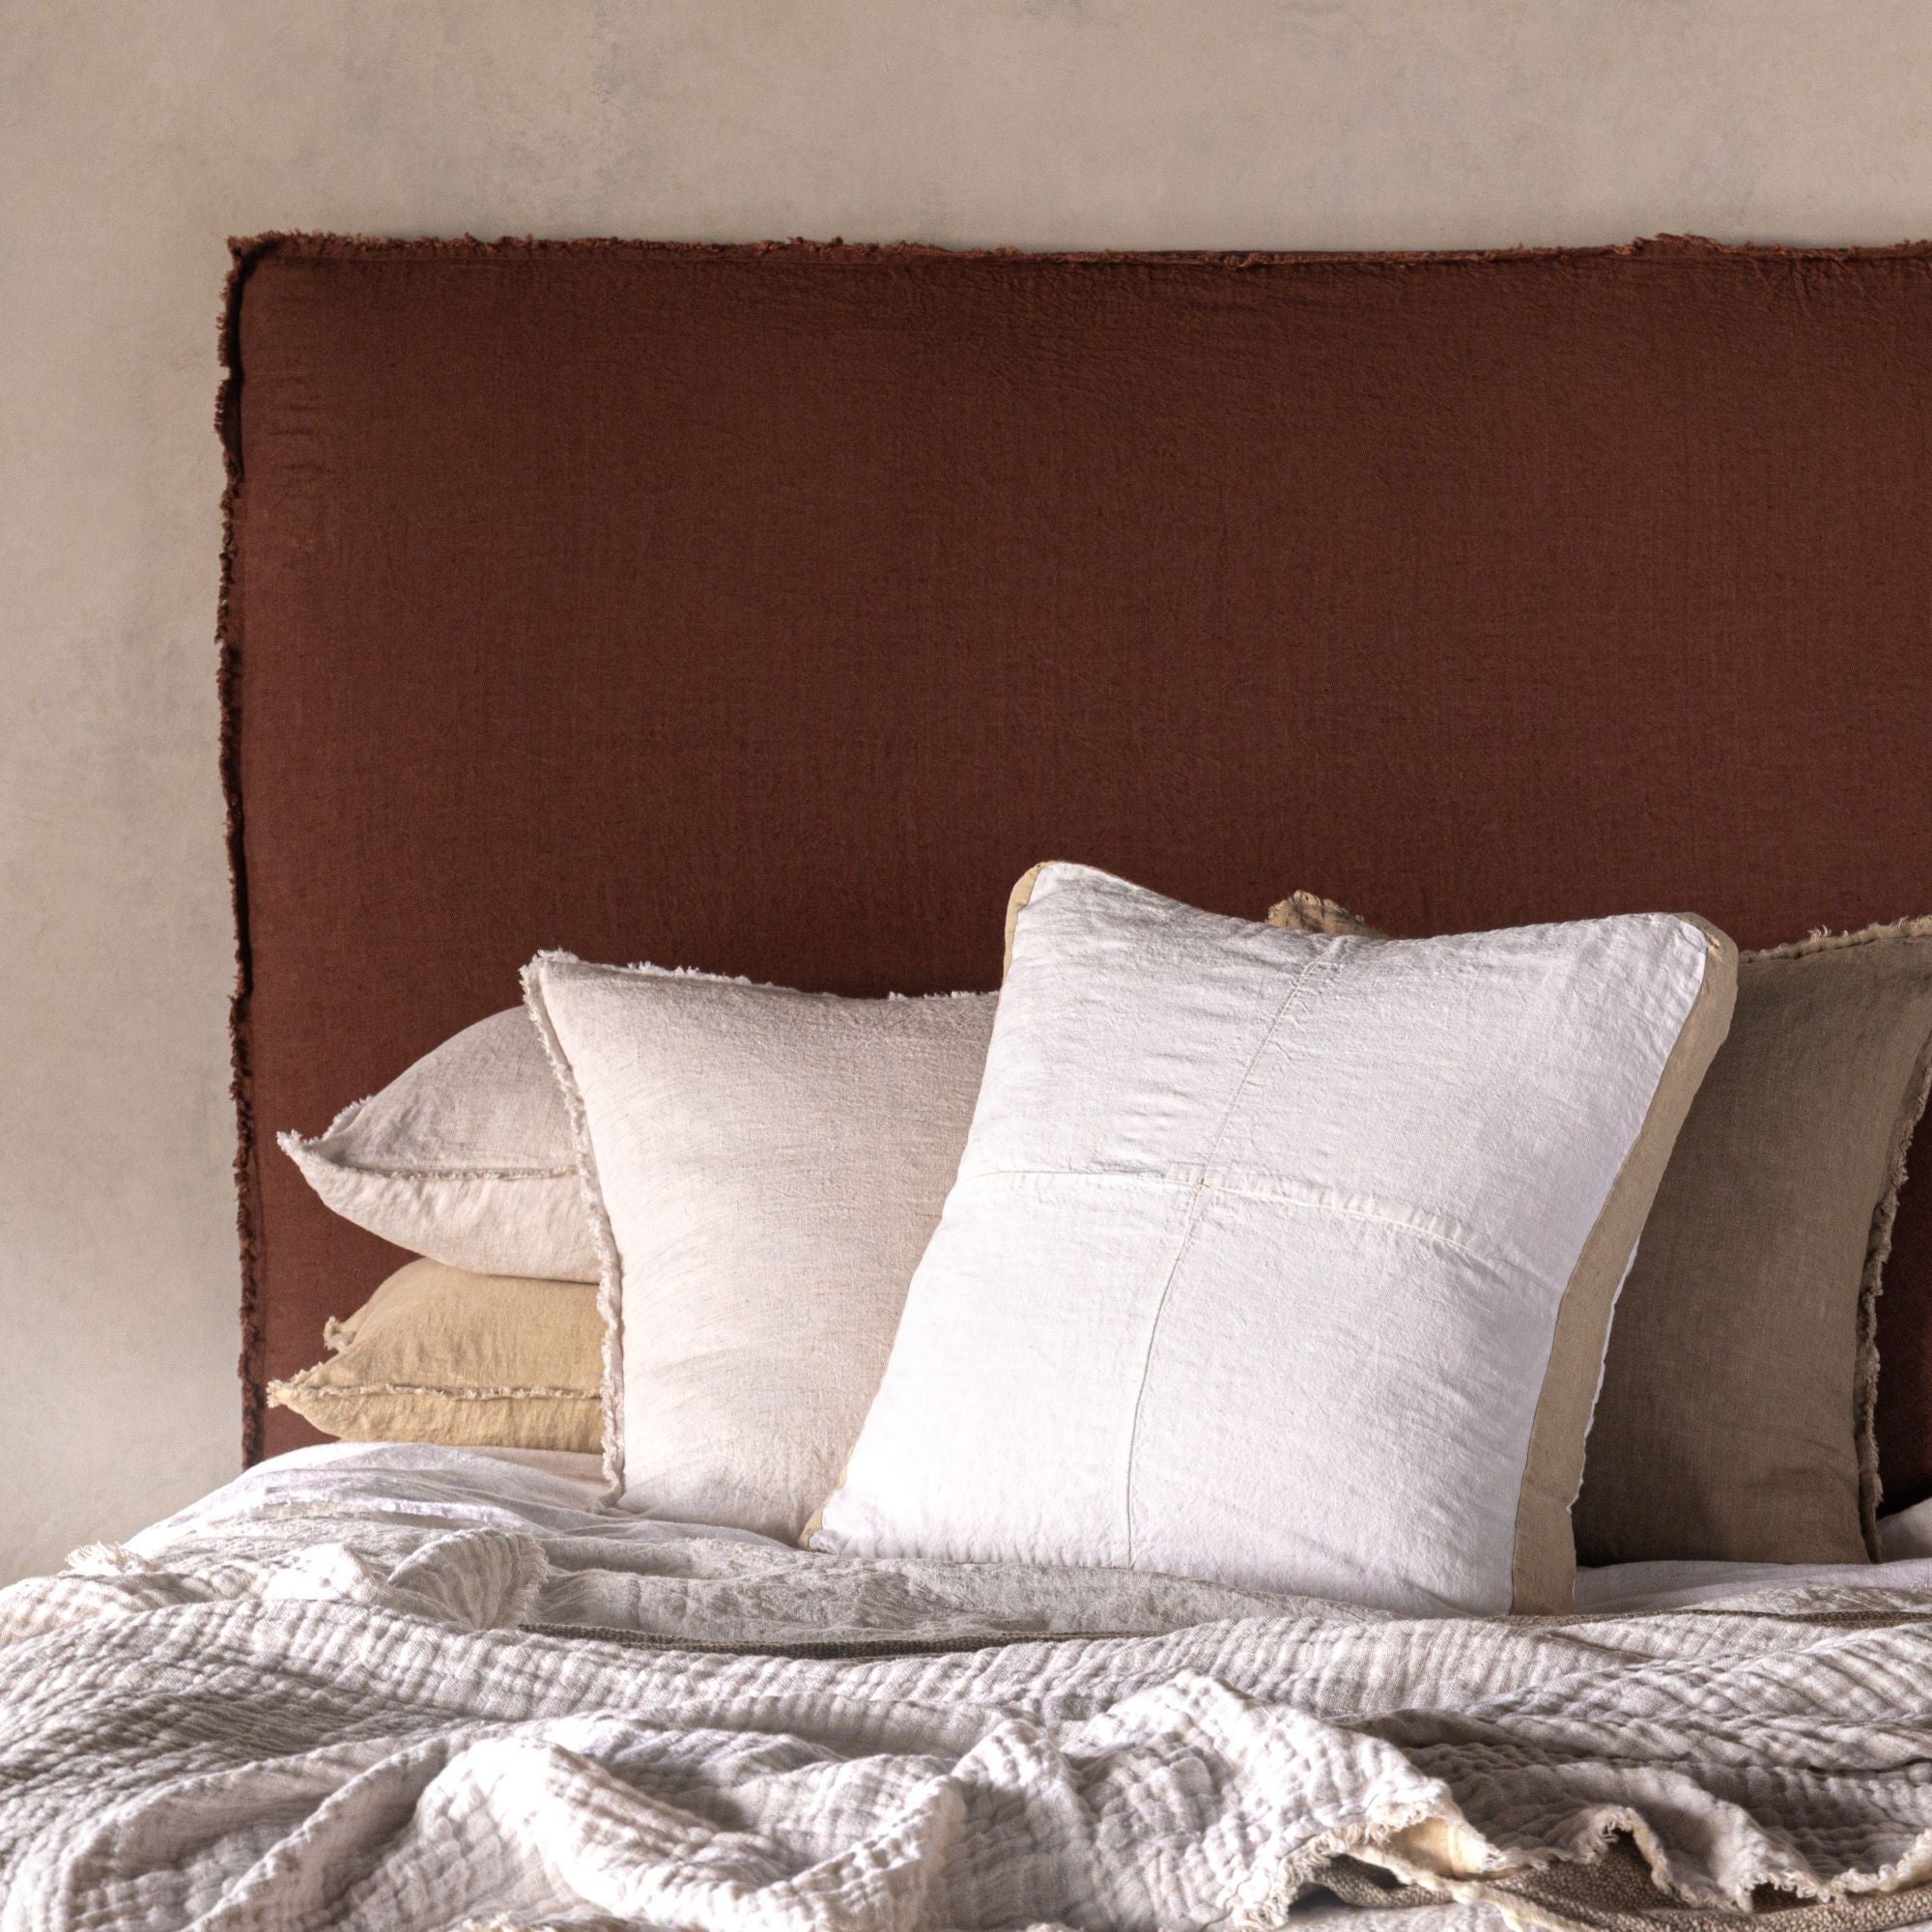 Linen Bedhead | Removable Linen Cover | Hale Mercantile Co.